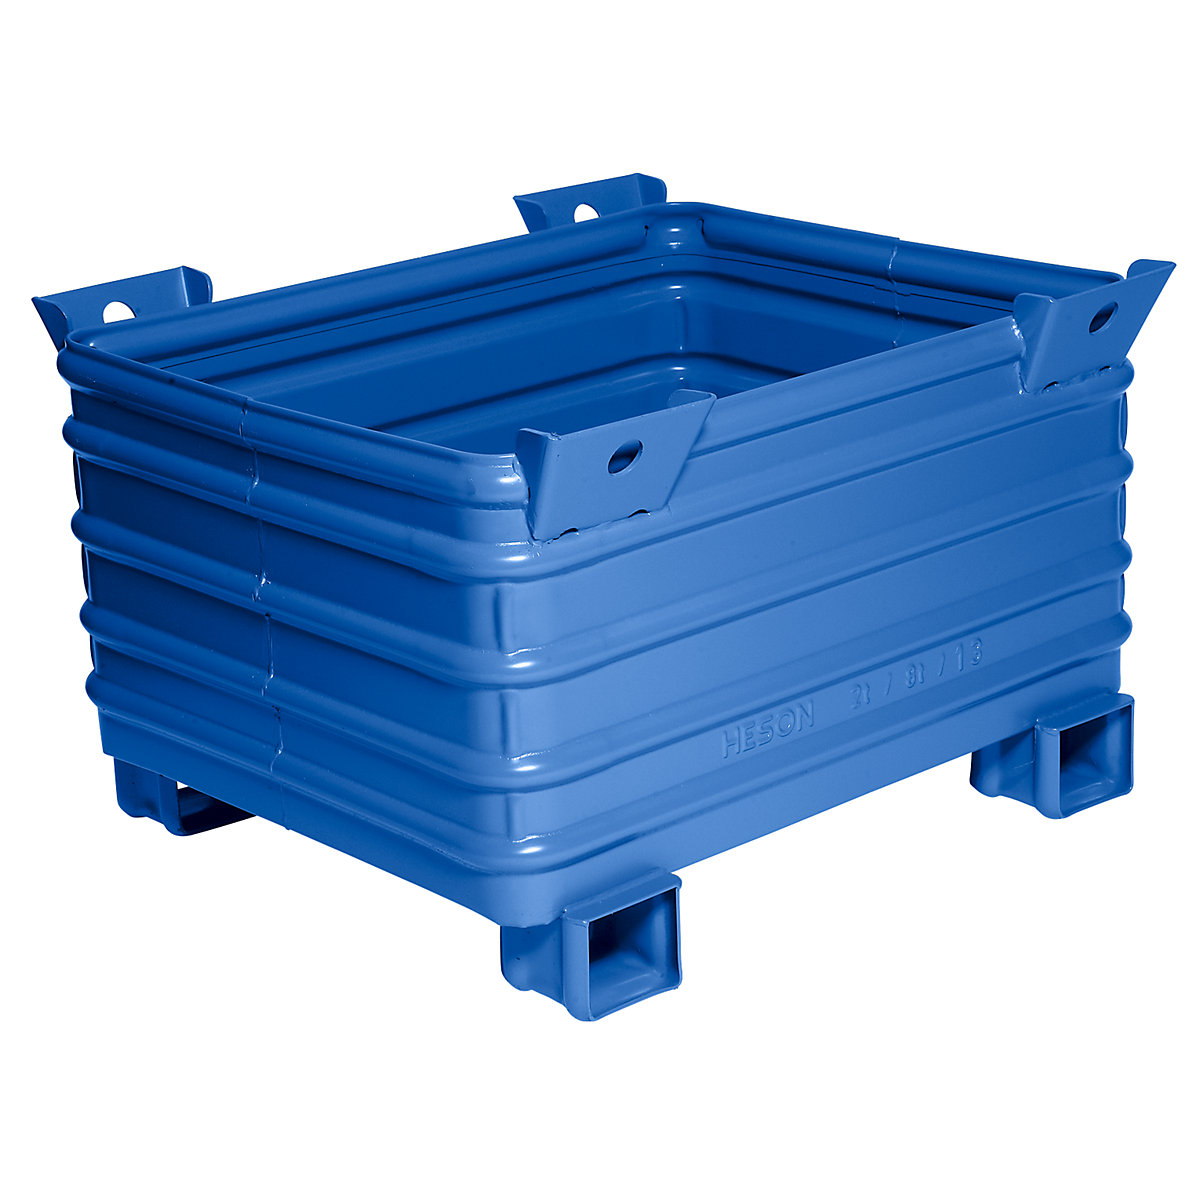 Heson Schwerlast-Stapelbehälter, BxL 800 x 1000 mm, mit U-förmigen Füßen, blau lackiert, ab 10 Stk